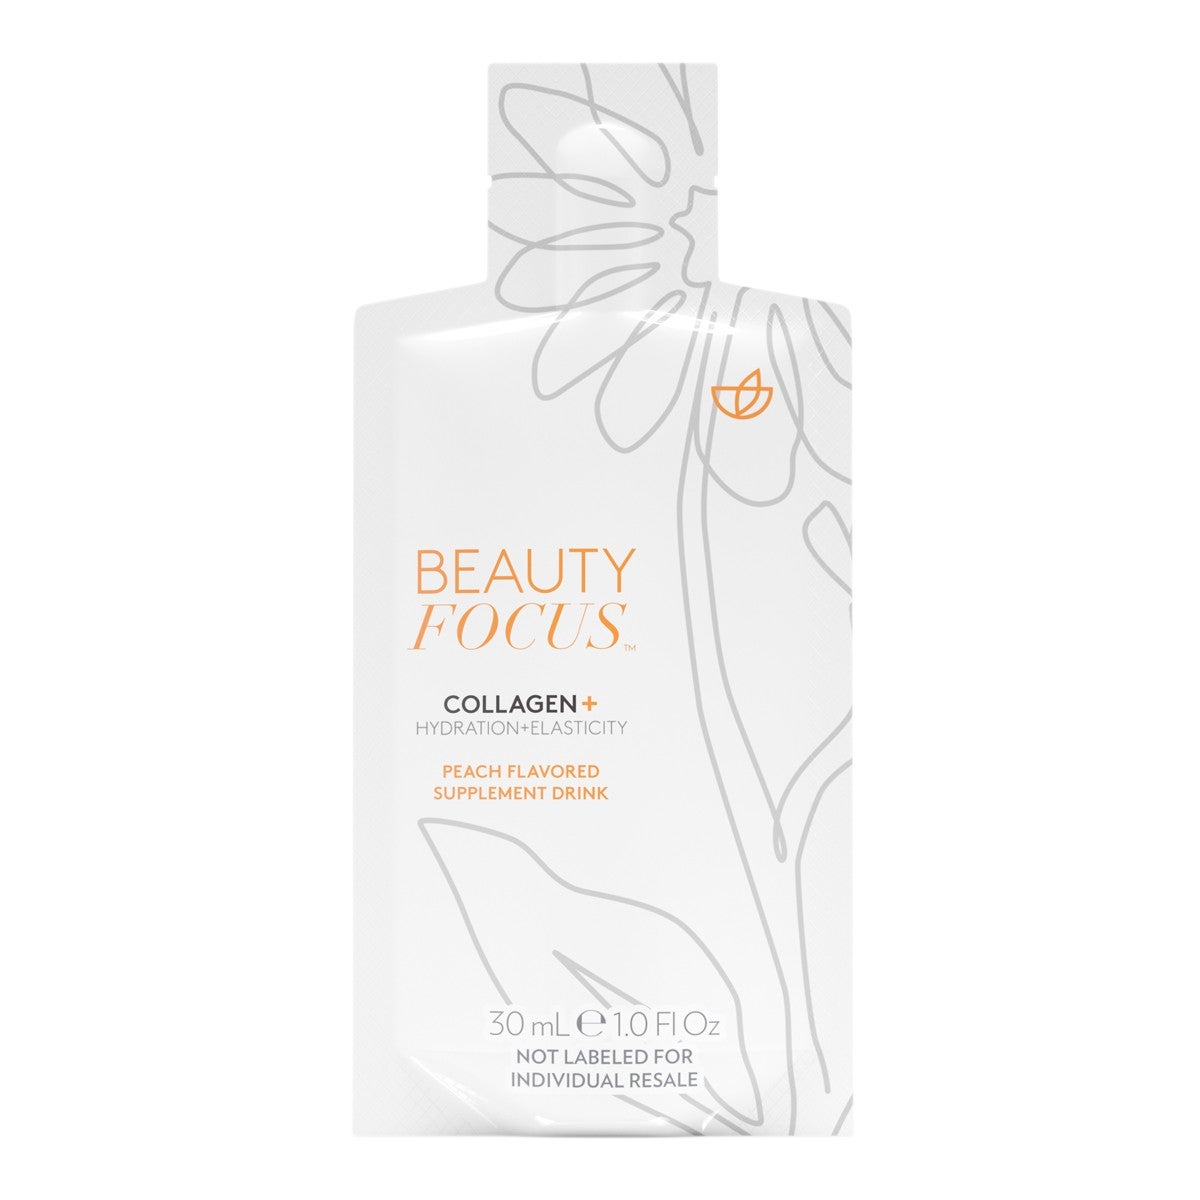 Beauty-Focus-Collagen-Plus-Peach-Supplement-Drink-pouch-actual-03